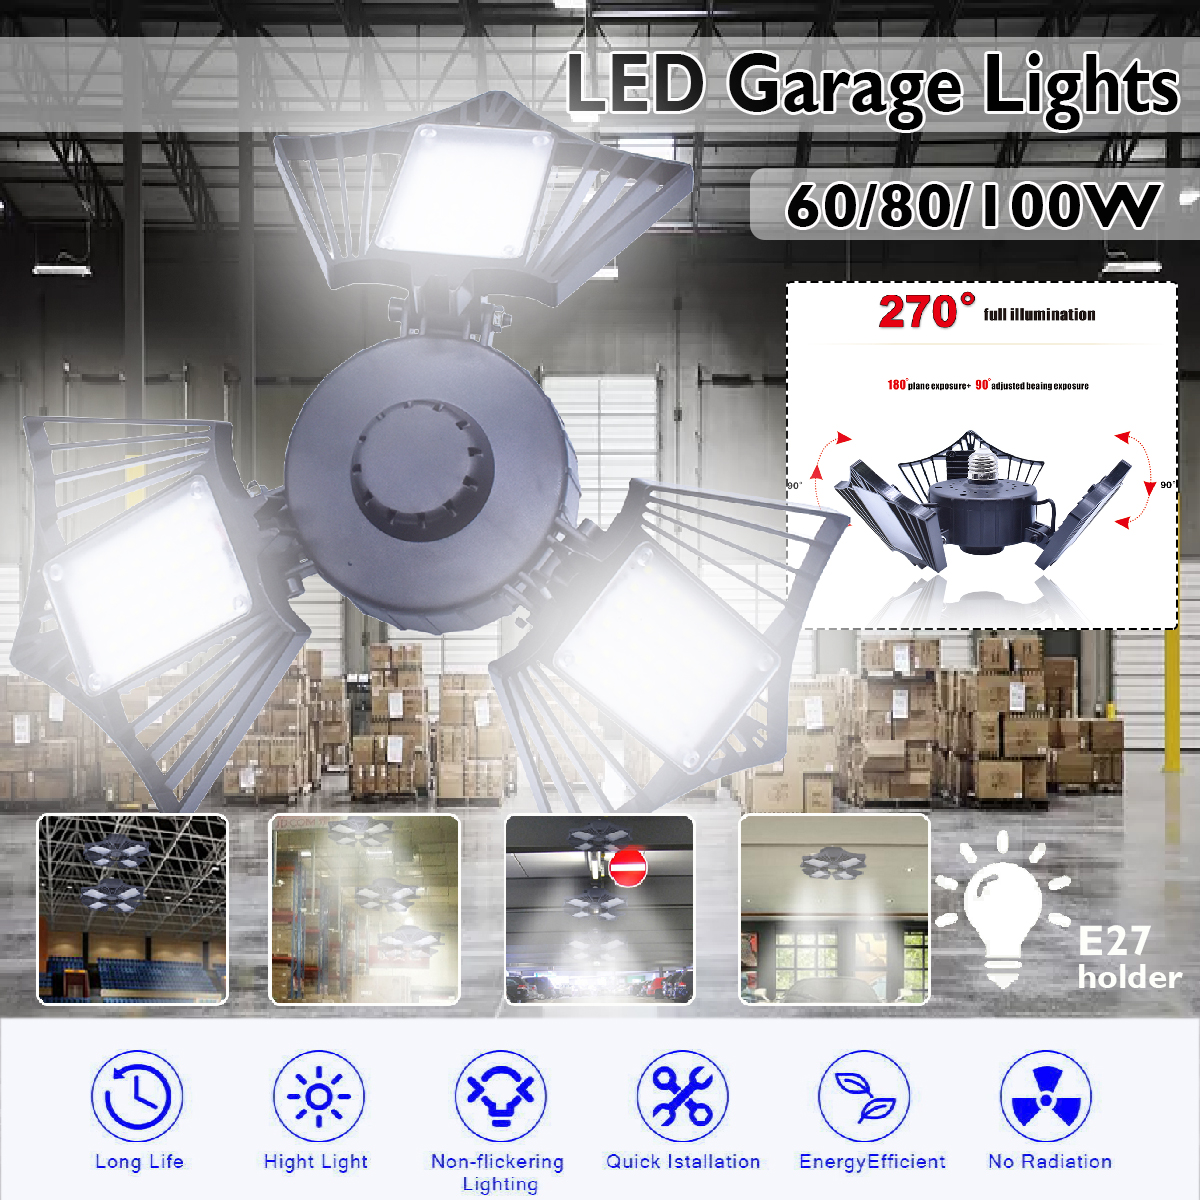 6080100W-LED-Garage-Lights-Deformable-Ceiling-Fixture-Workshop-Shop-Three-Leaf-1666775-1